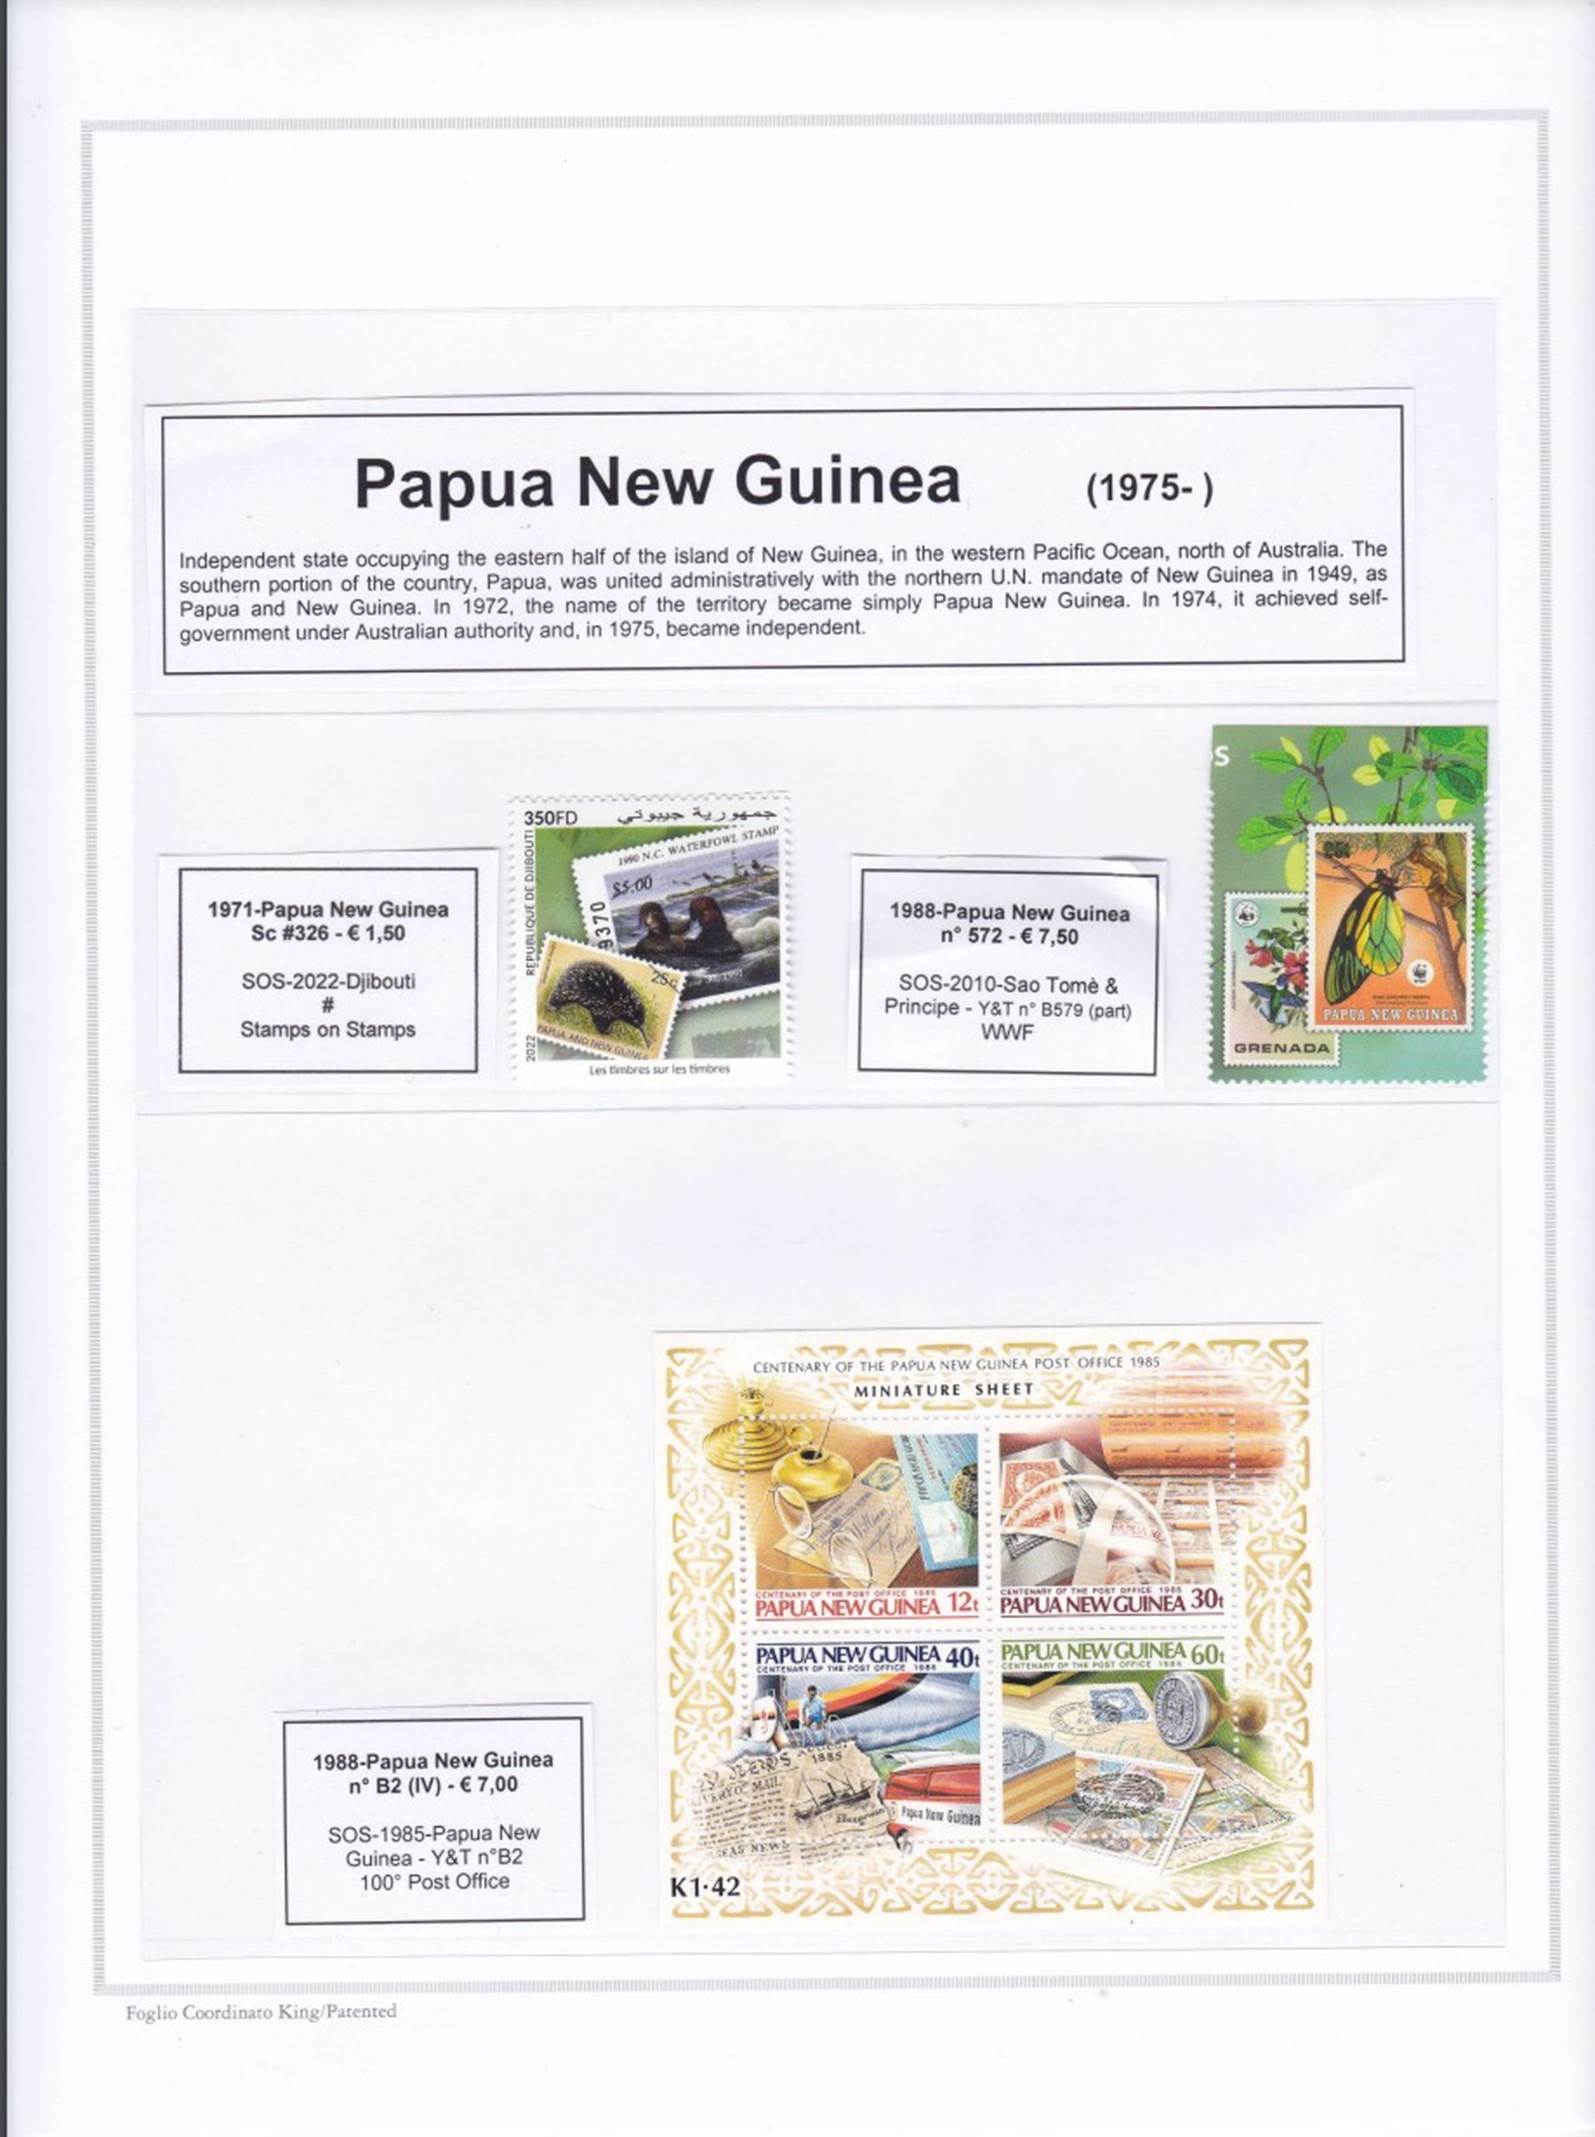 Immagine che contiene testo, Stampa, francobollo

Descrizione generata automaticamente